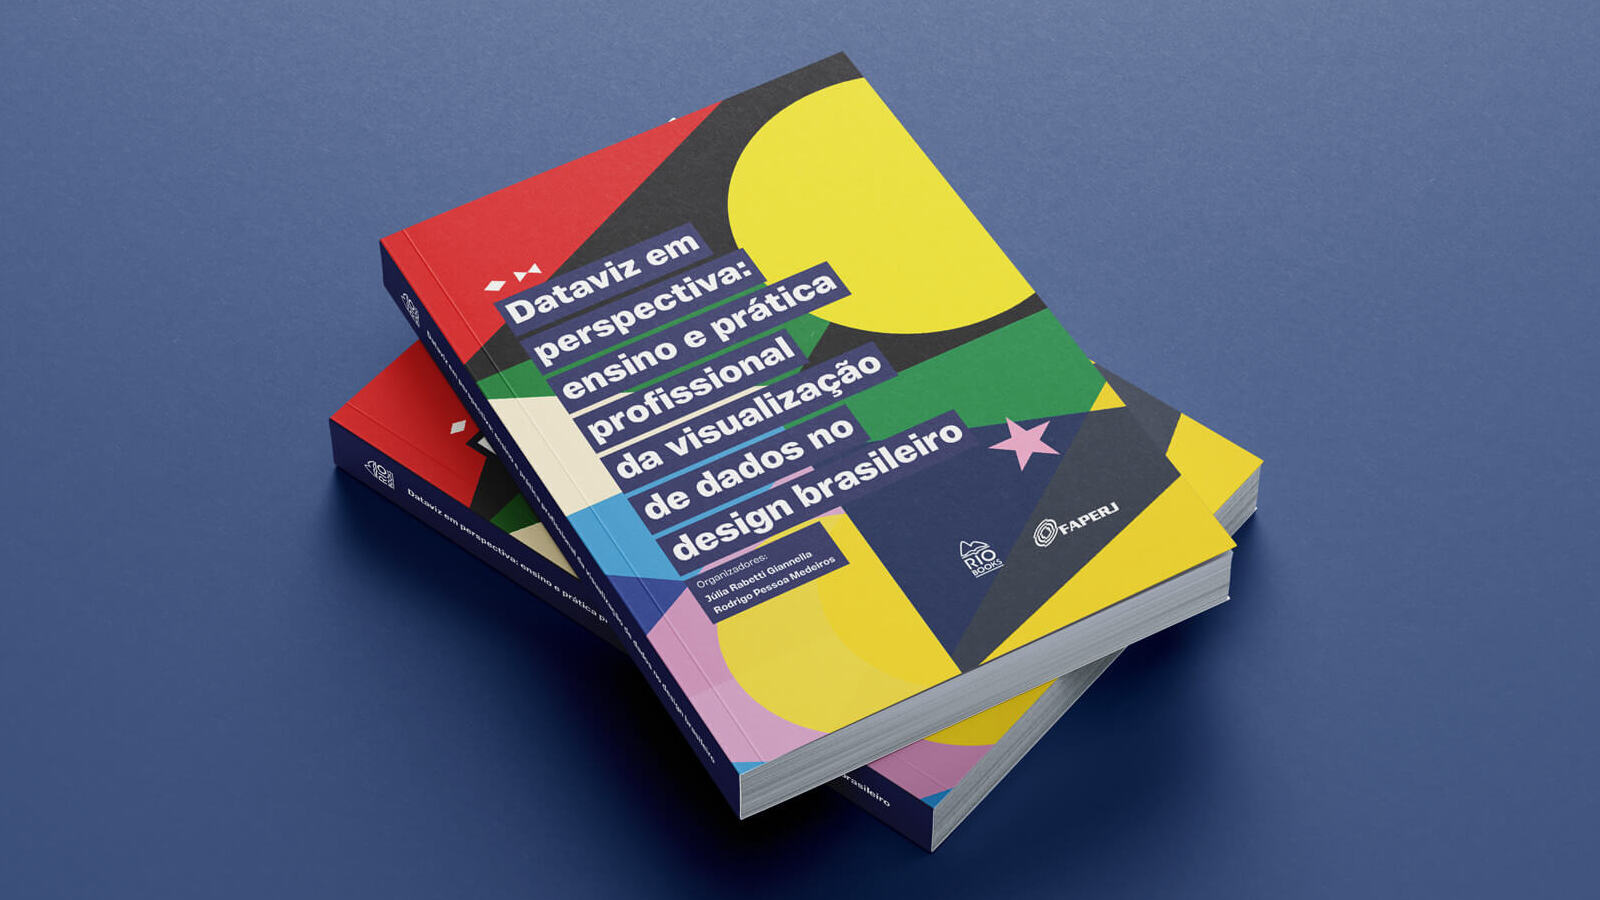 Photo of a pile of two colorful books on a blue background. The book is titled “Dataviz em perspectiva: ensino e prática profissional da visualização de dados no design brasileiro”